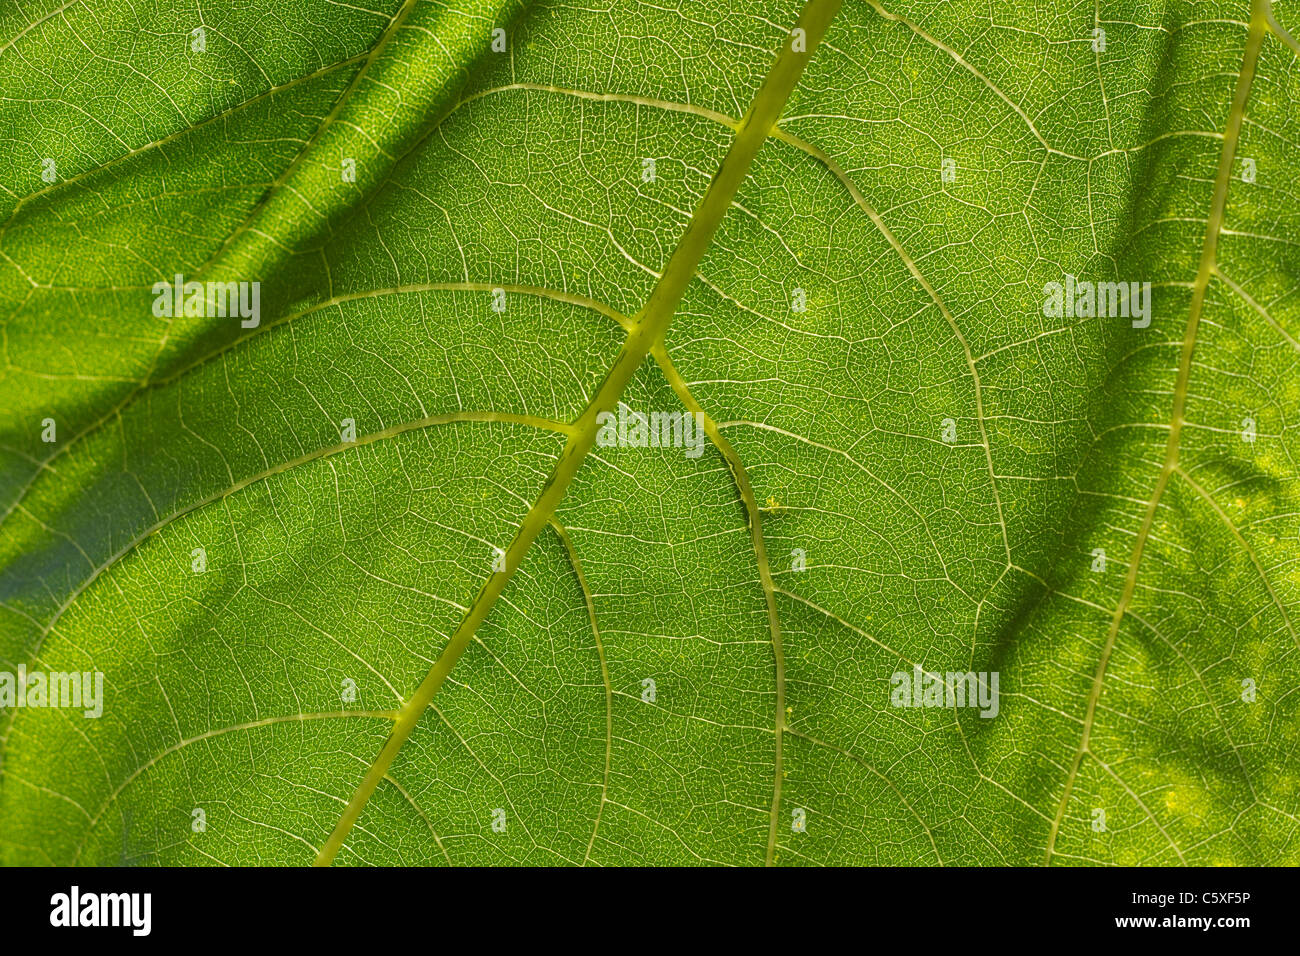 La lumière éclaire une feuille complète d'une plante de tournesol Banque D'Images